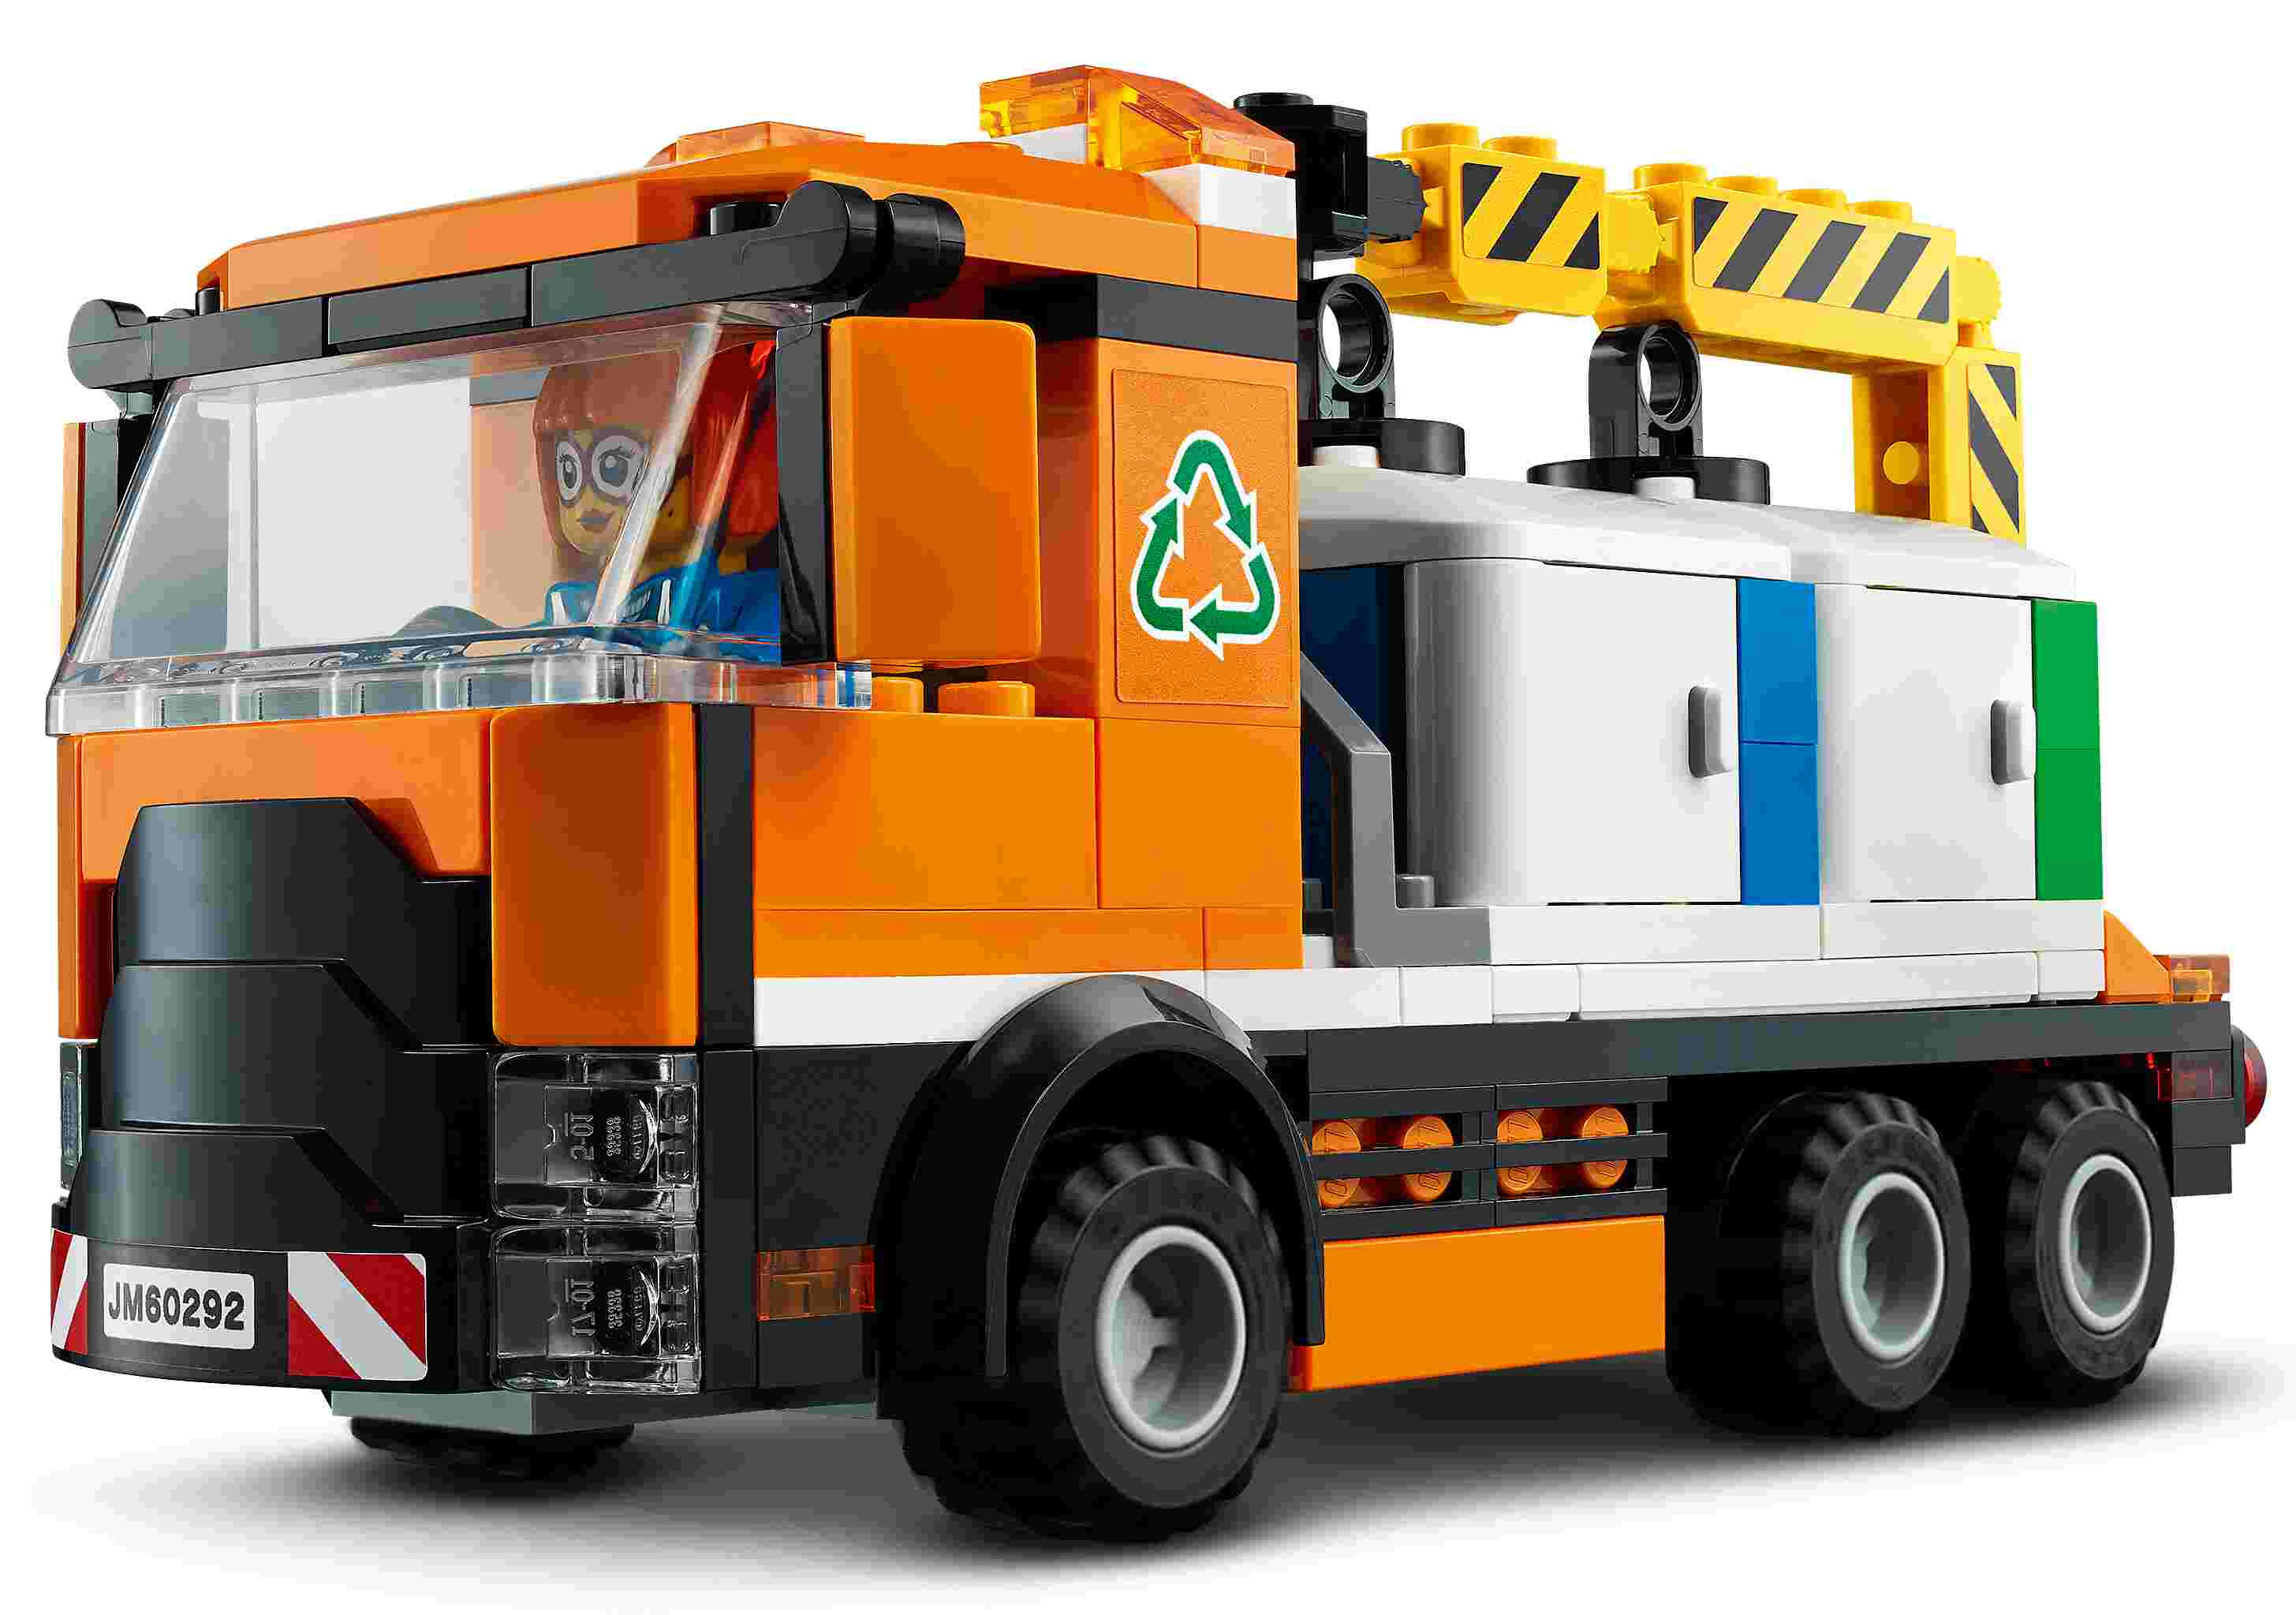 LEGO 60292 City Stadtzentrum Bauset mit Spielzeug-Motorbike, Fahrrad, Truck